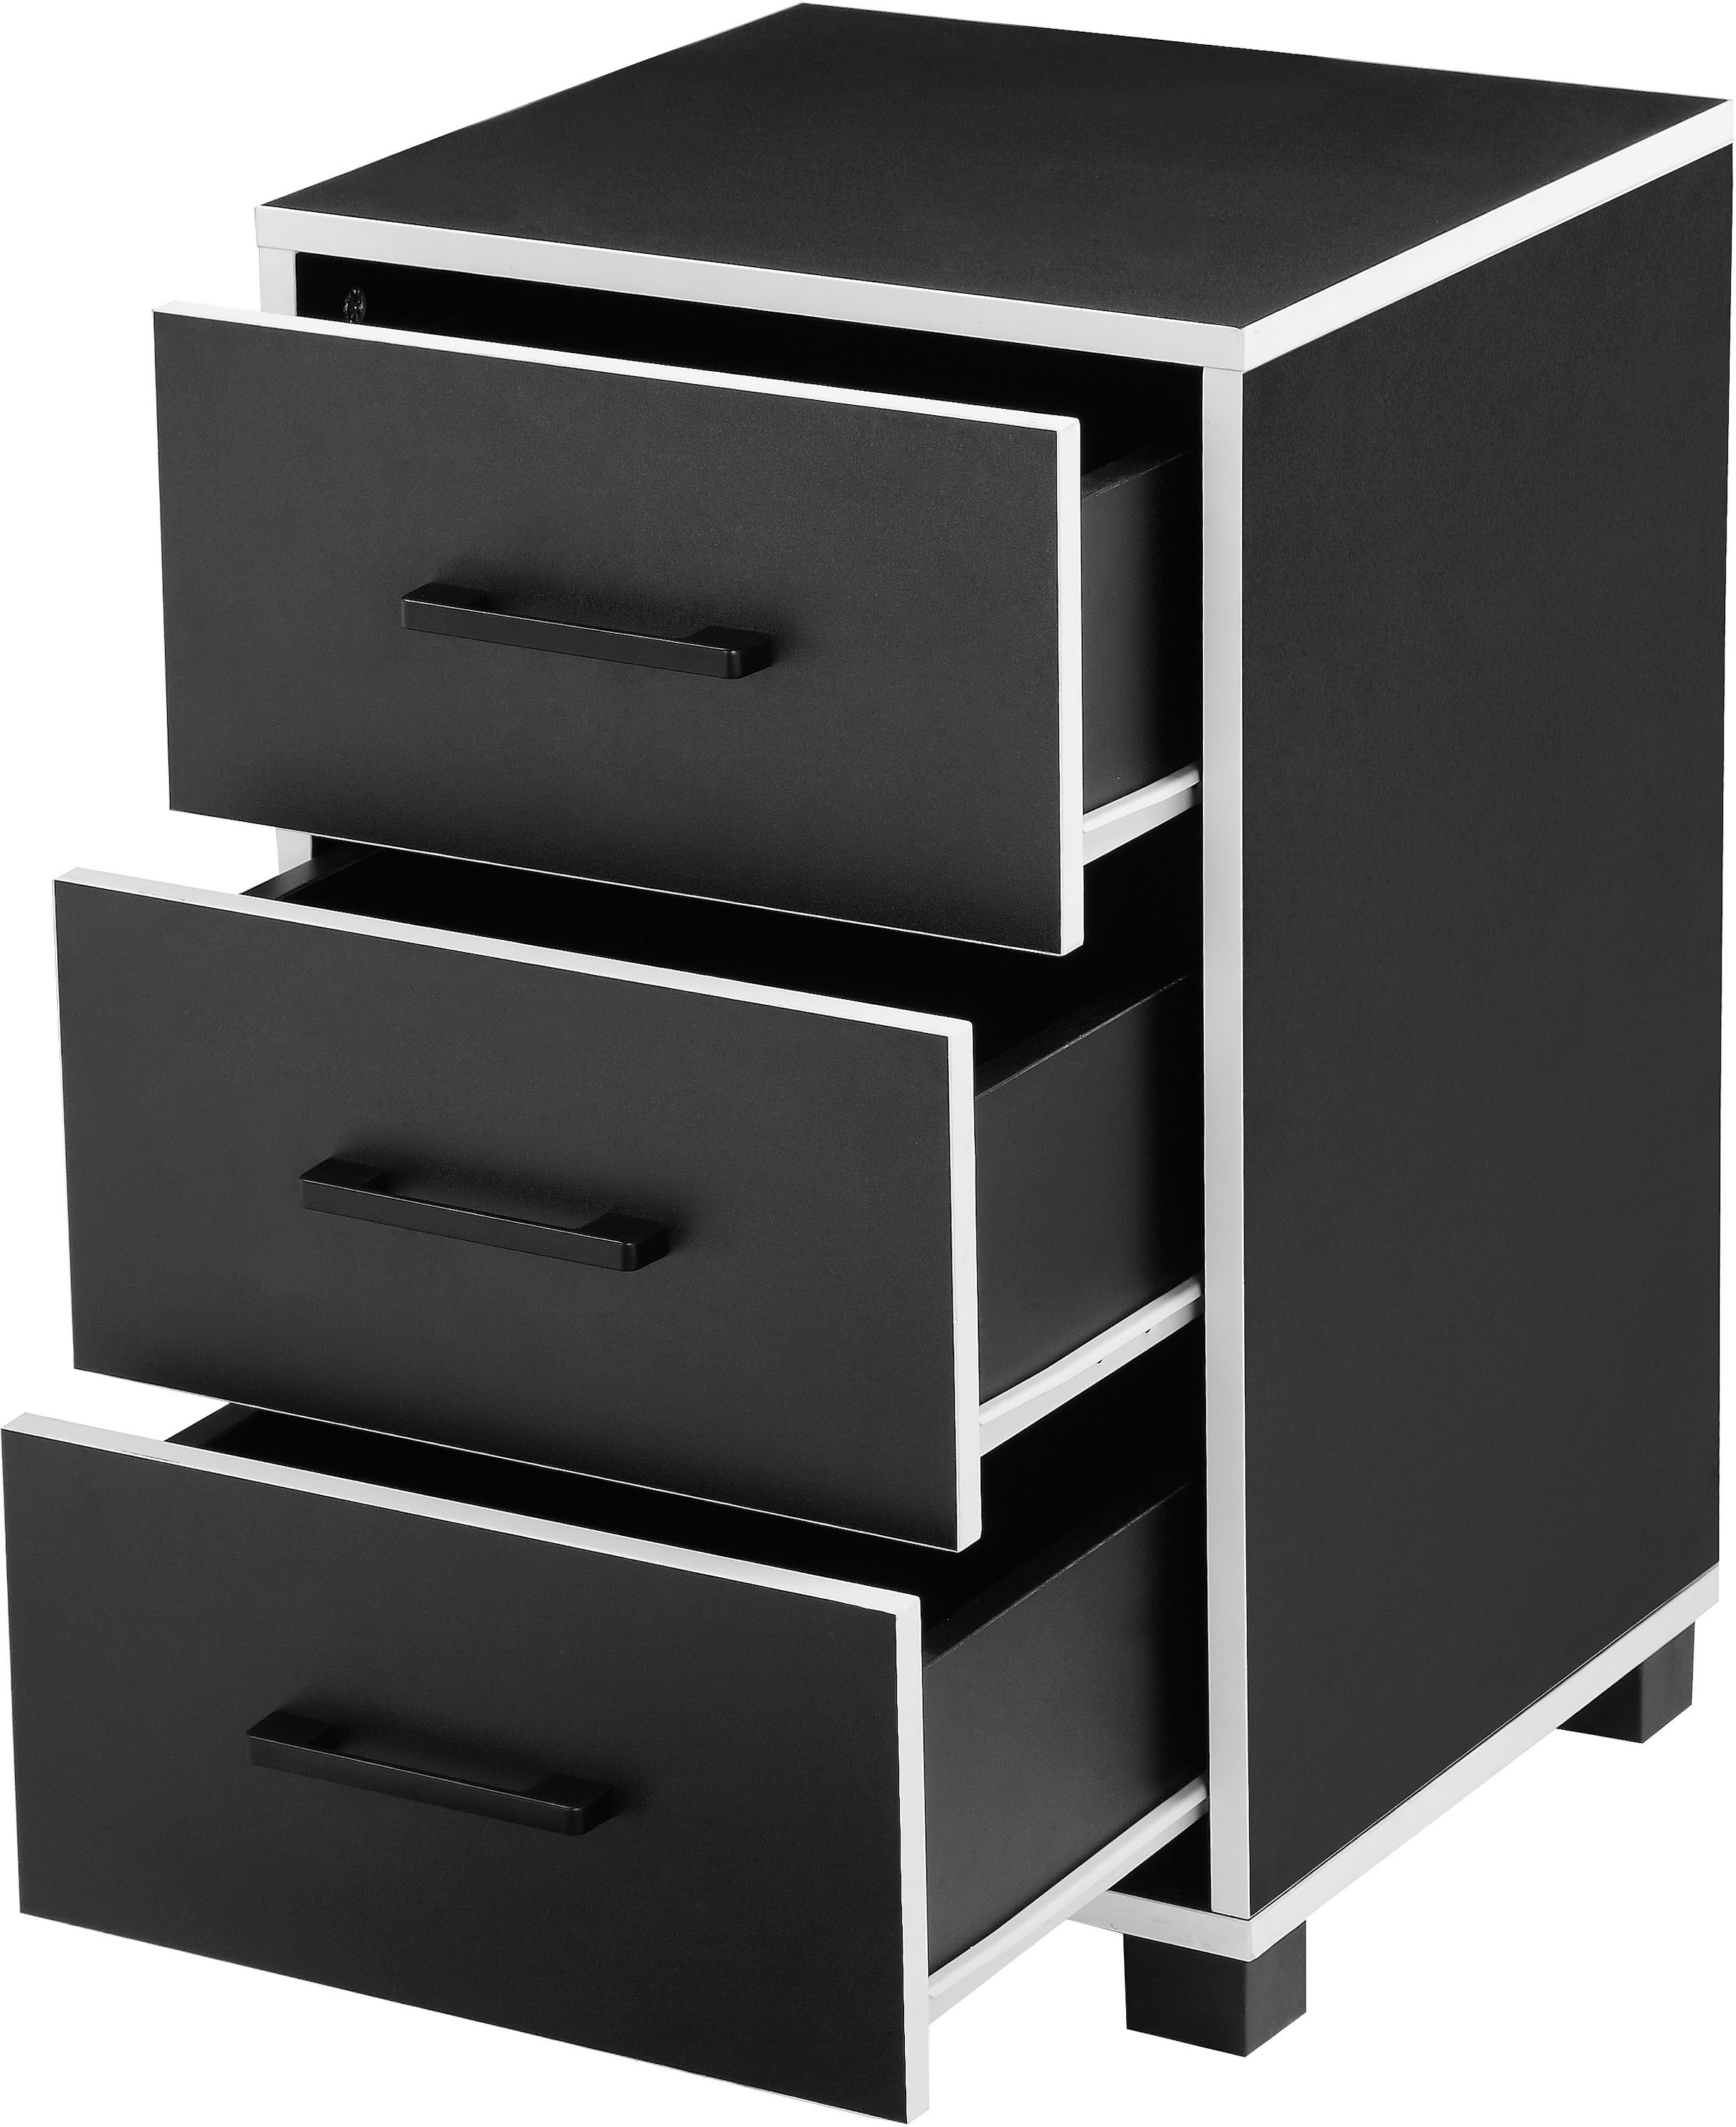 Places of Style Container »Moid, Bürocontainer, Schreibtischcontainer,«, 3 Schubladen, Metallgriffe, 40x64 cm